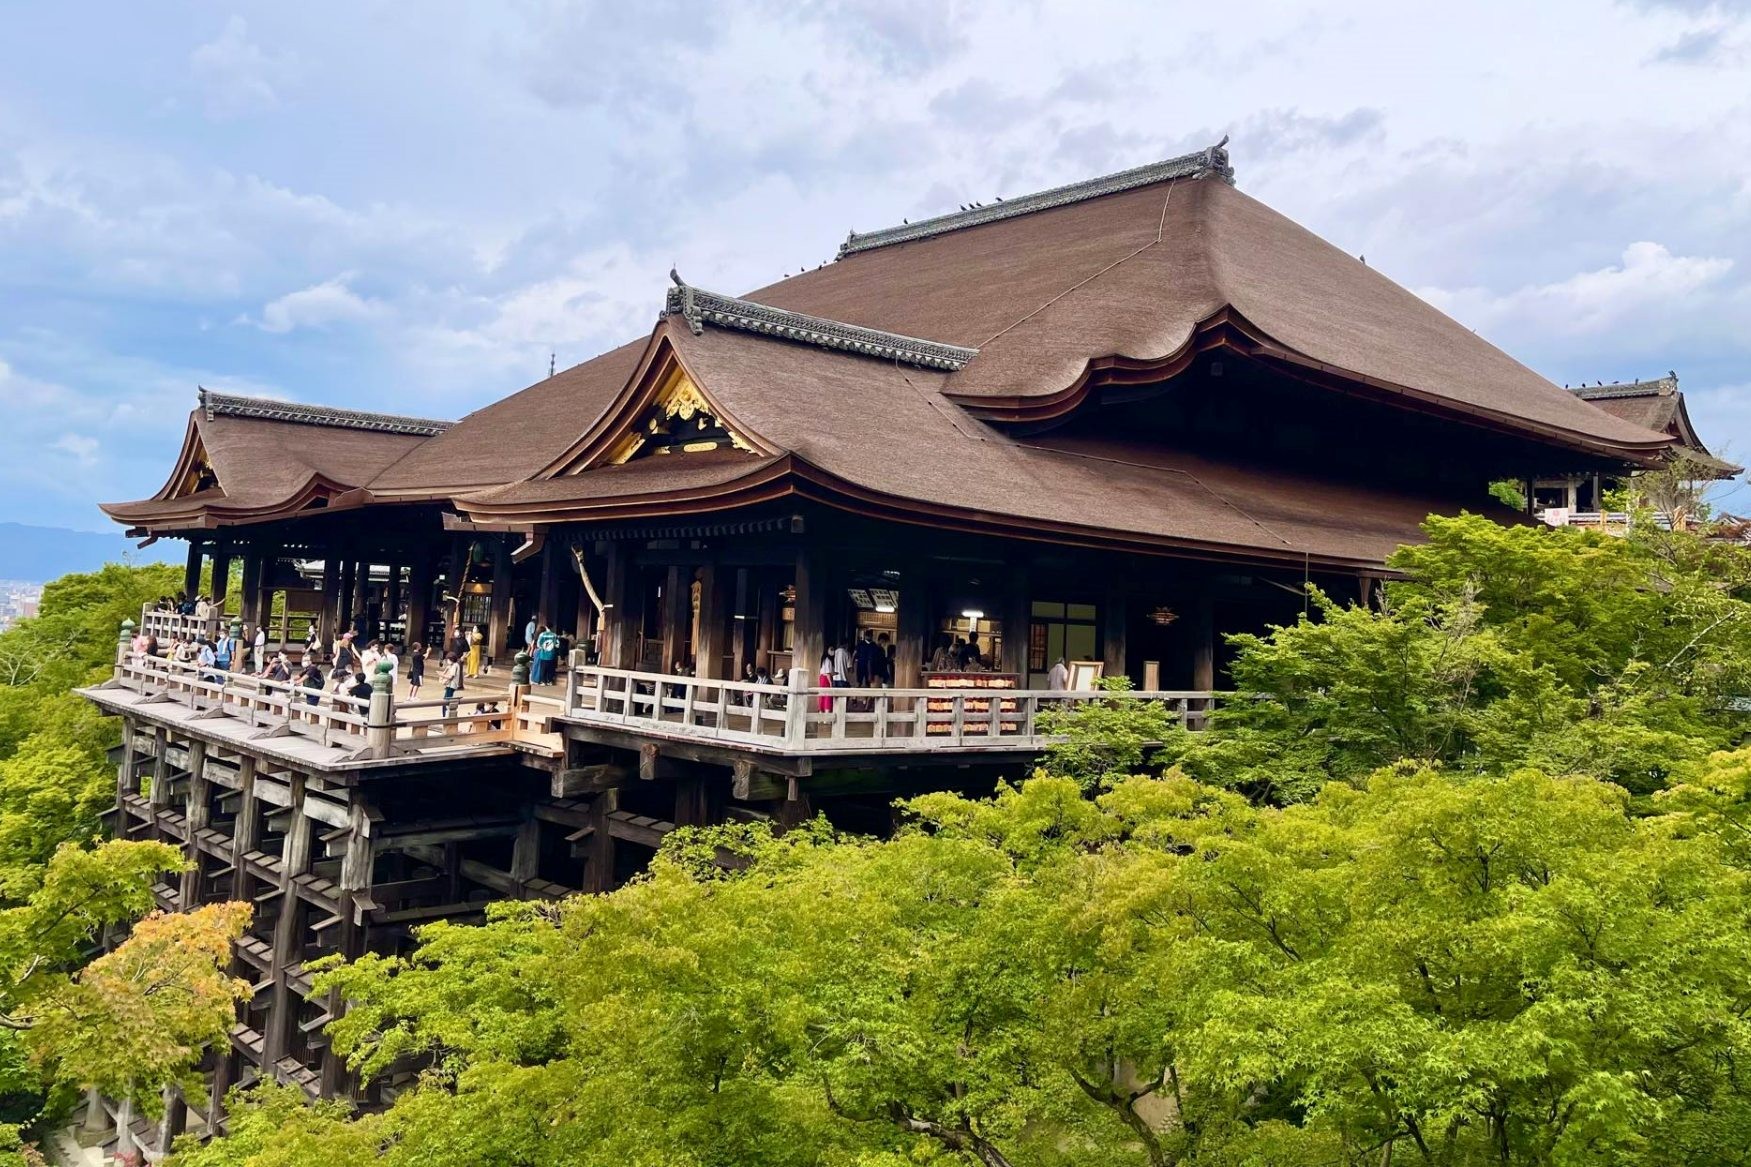 Độc lạ ngôi chùa cổ đẹp nhất cố đô Nhật Bản với kiến trúc gỗ không dùng đến đinh